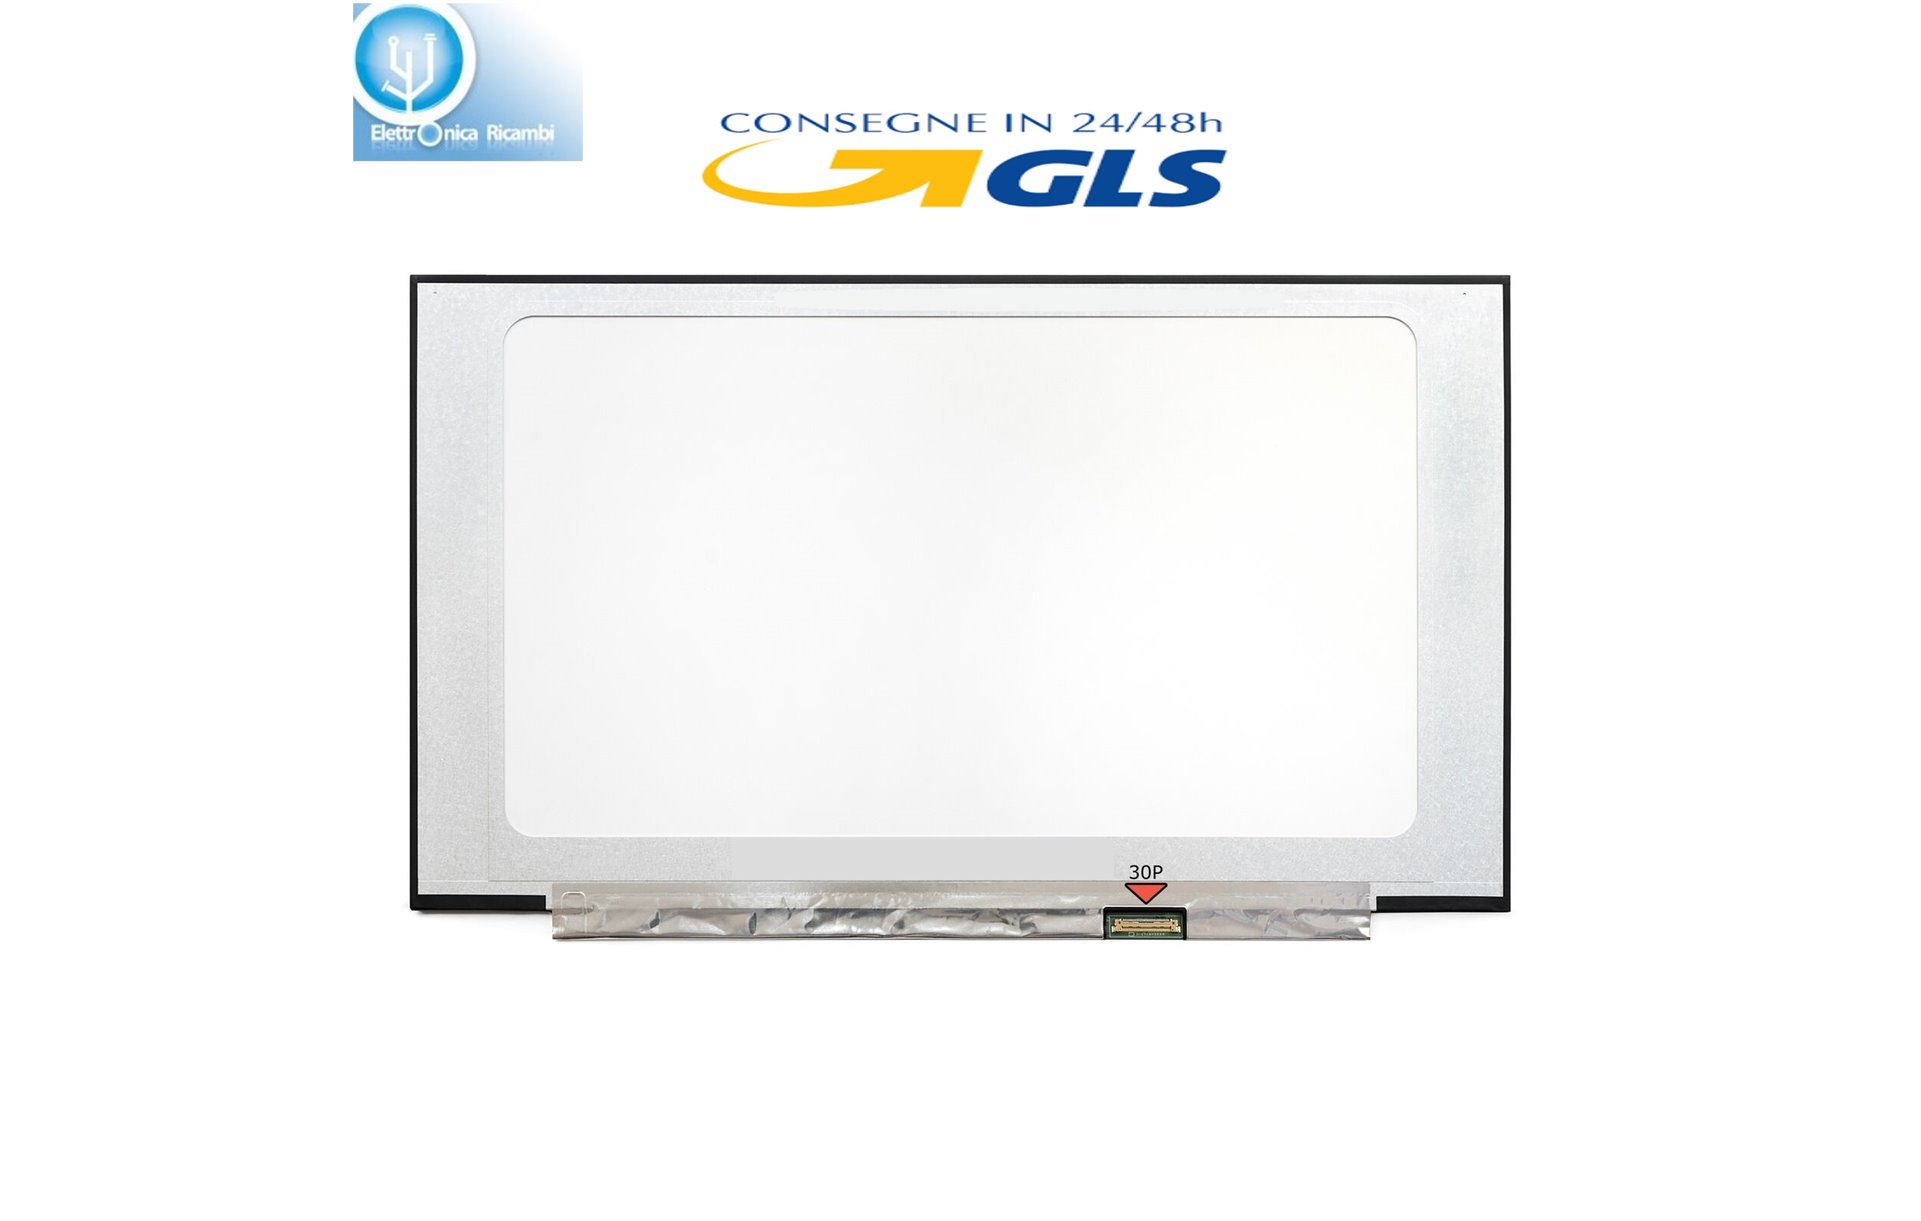 DISPLAY LCD Schermo Fujitsu LIFEBOOK U7511 15,6" (13.6"x7.6") LED 30 pin  IPS